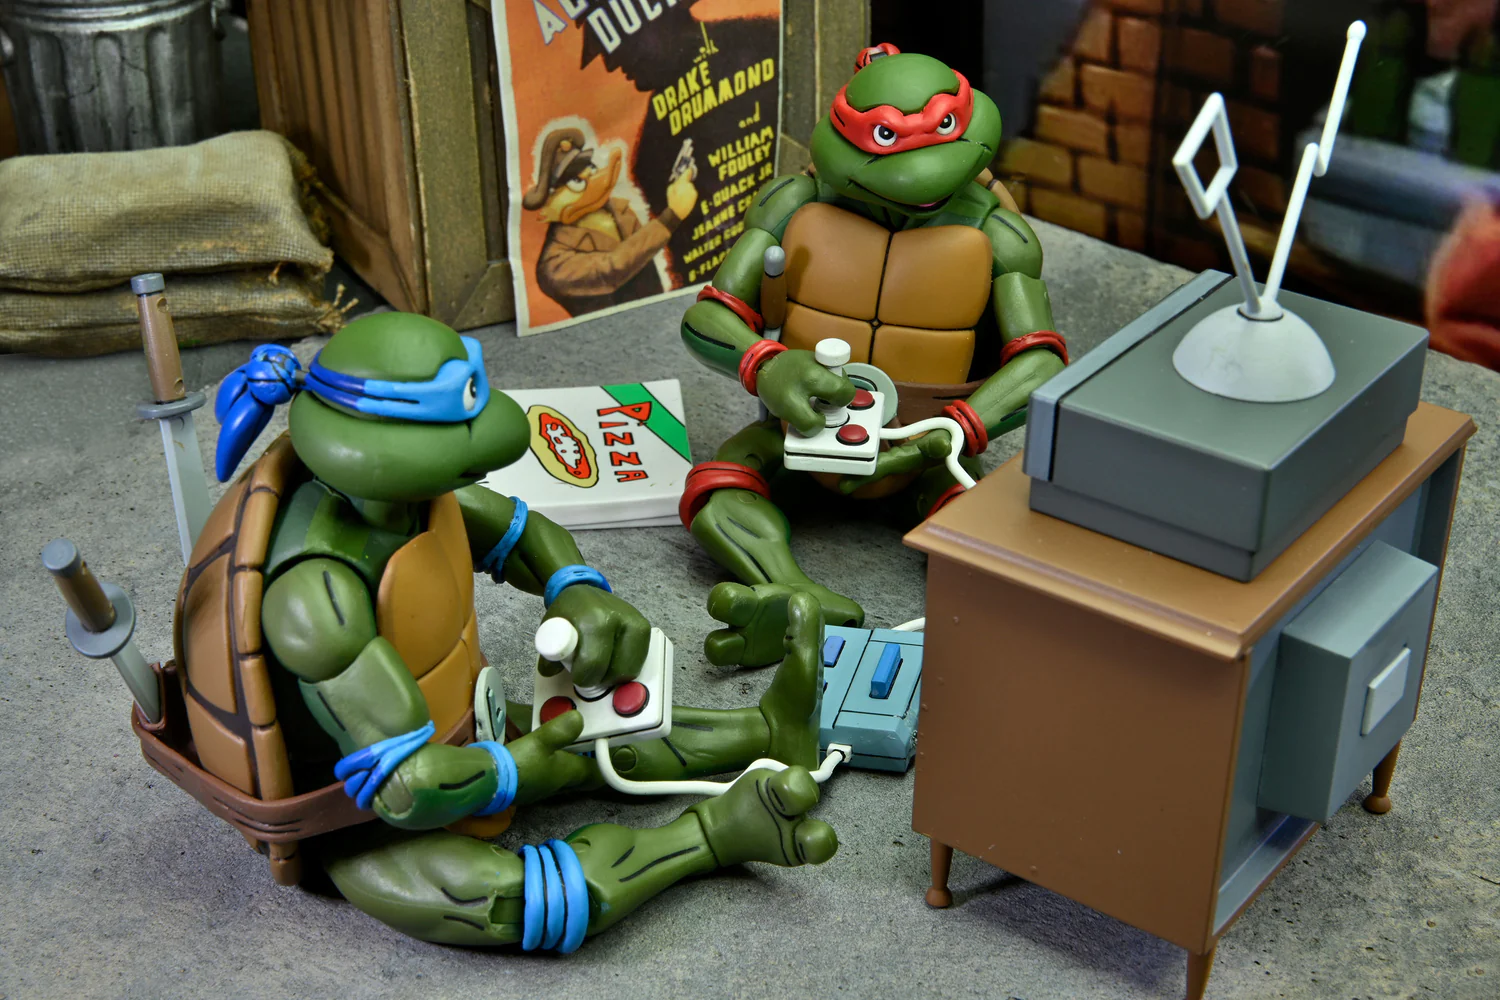 Teenage Mutant Ninja Turtles (Cartoon) 7” Scale Accessory Set Pre